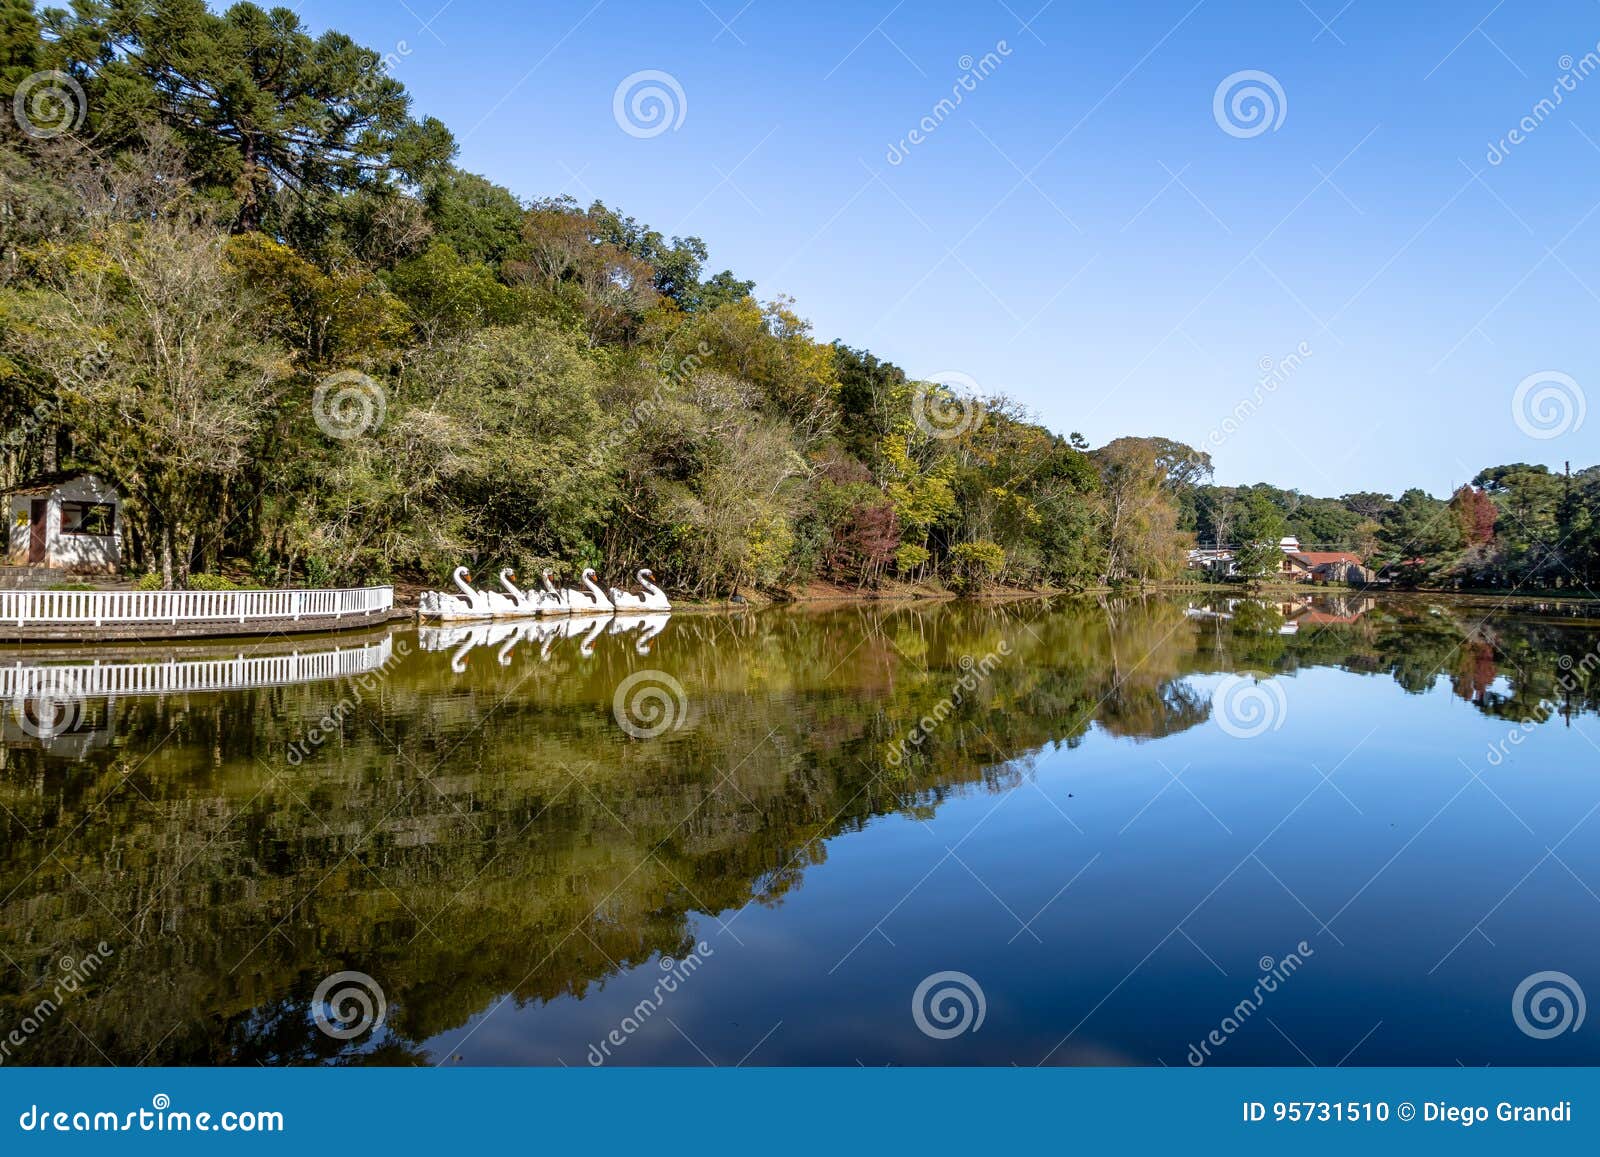 lake with swan pedal boats at immigrant village park parque aldeia do imigrante - nova petropolis, rio grande do sul, brazil